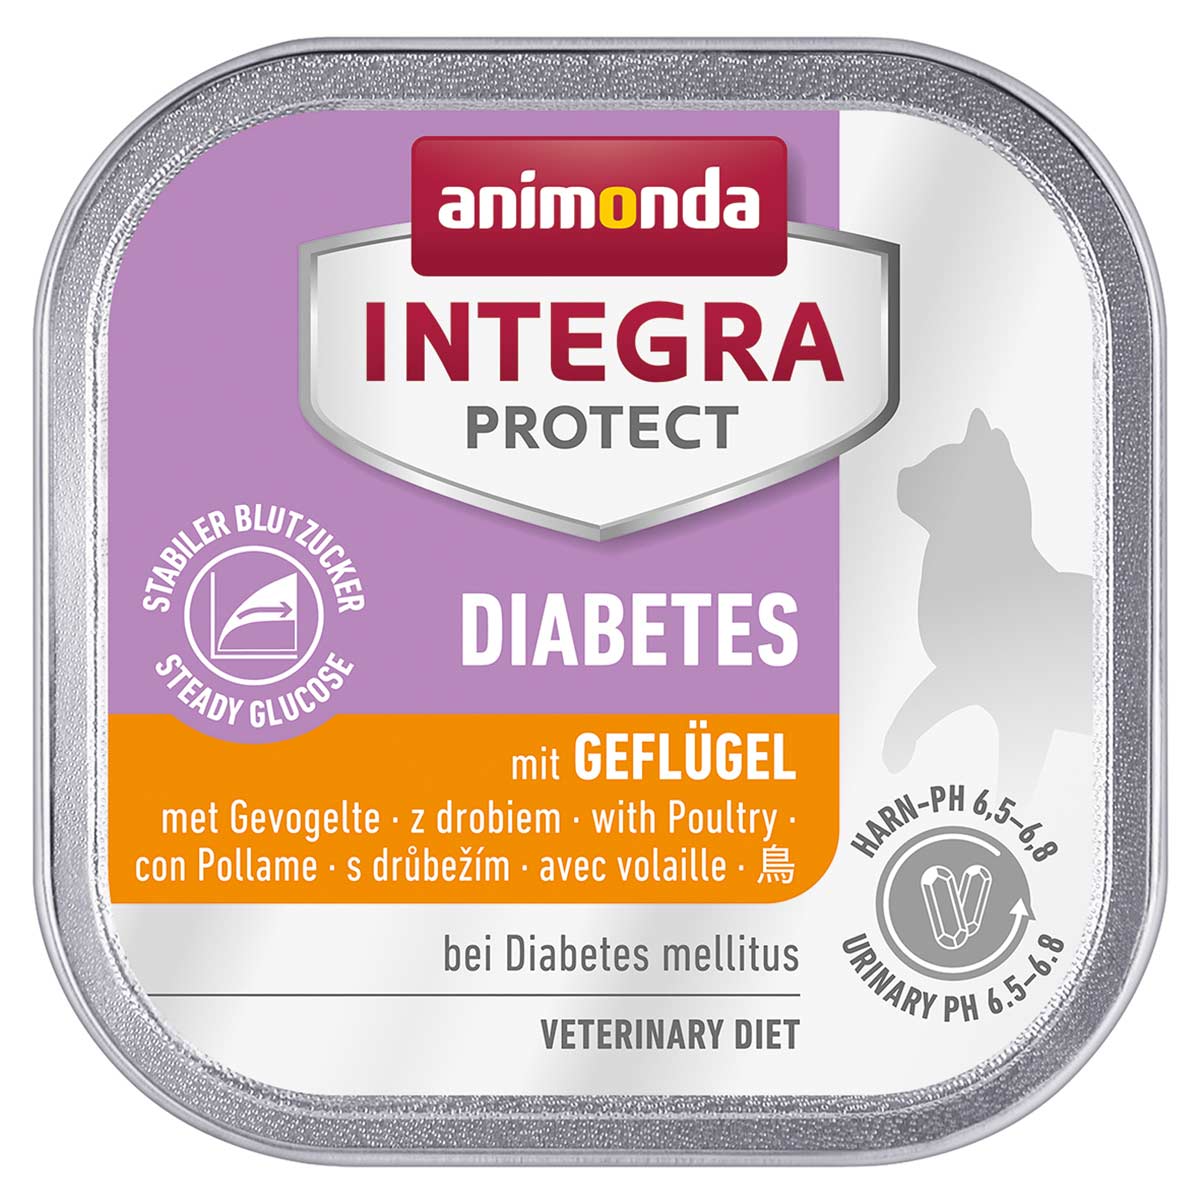 animonda INTEGRA PROTECT Diabetes mit Geflügel 6x100g von animonda Integra Protect